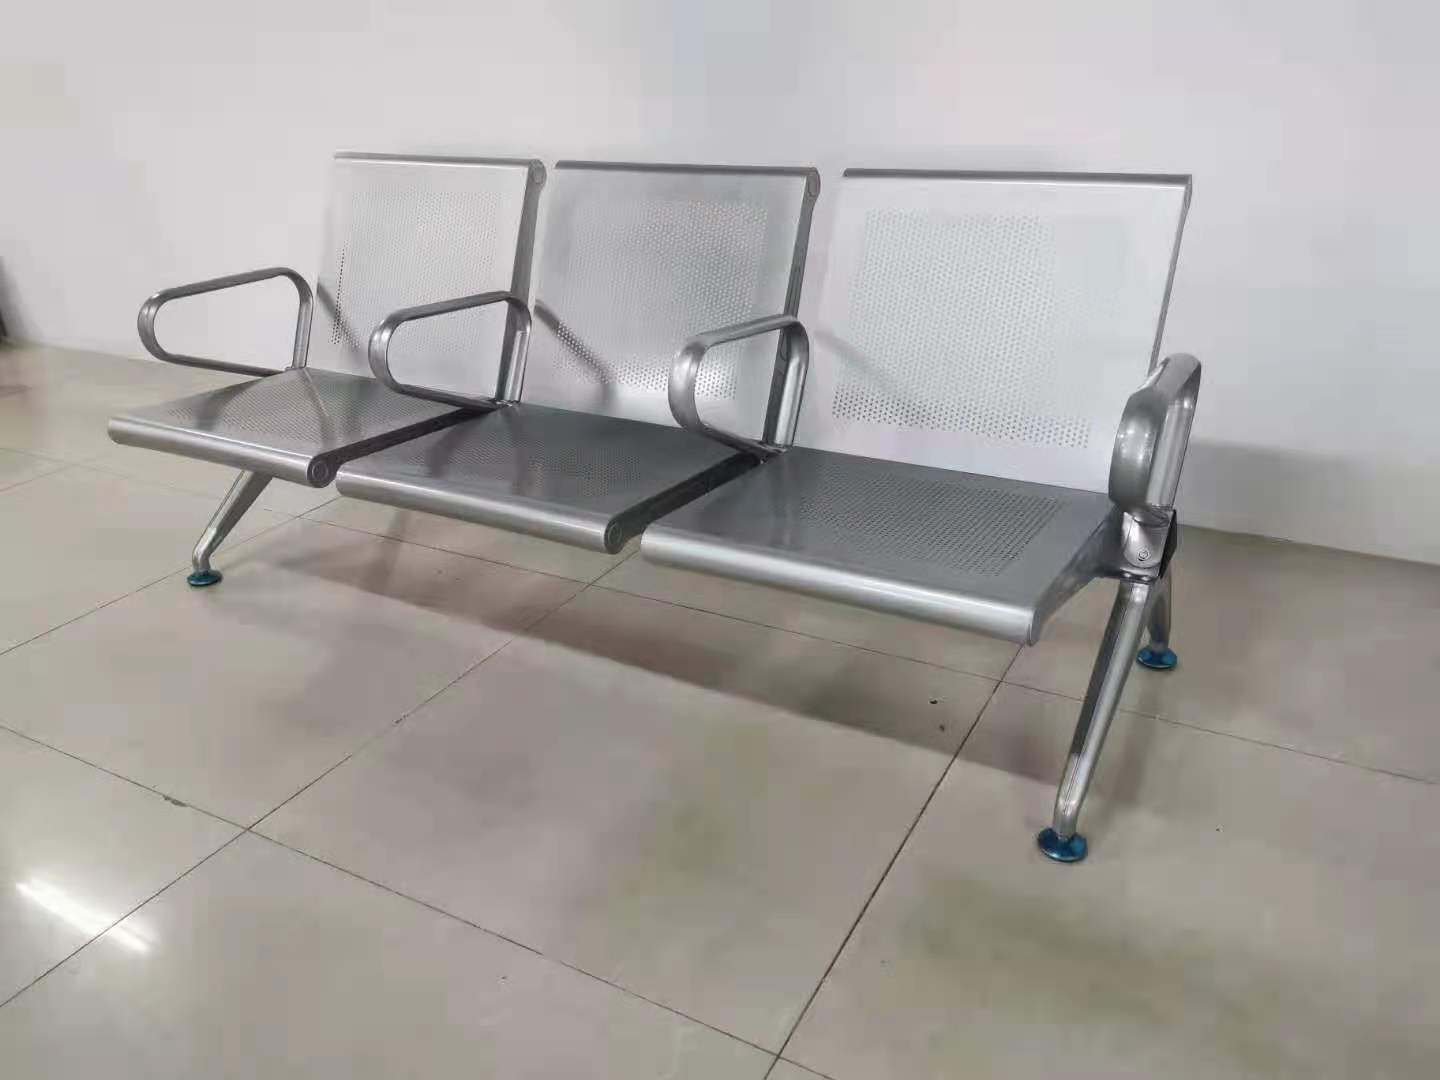 公共场所排椅铝合金不锈钢排椅机场超市广场长椅定制排椅